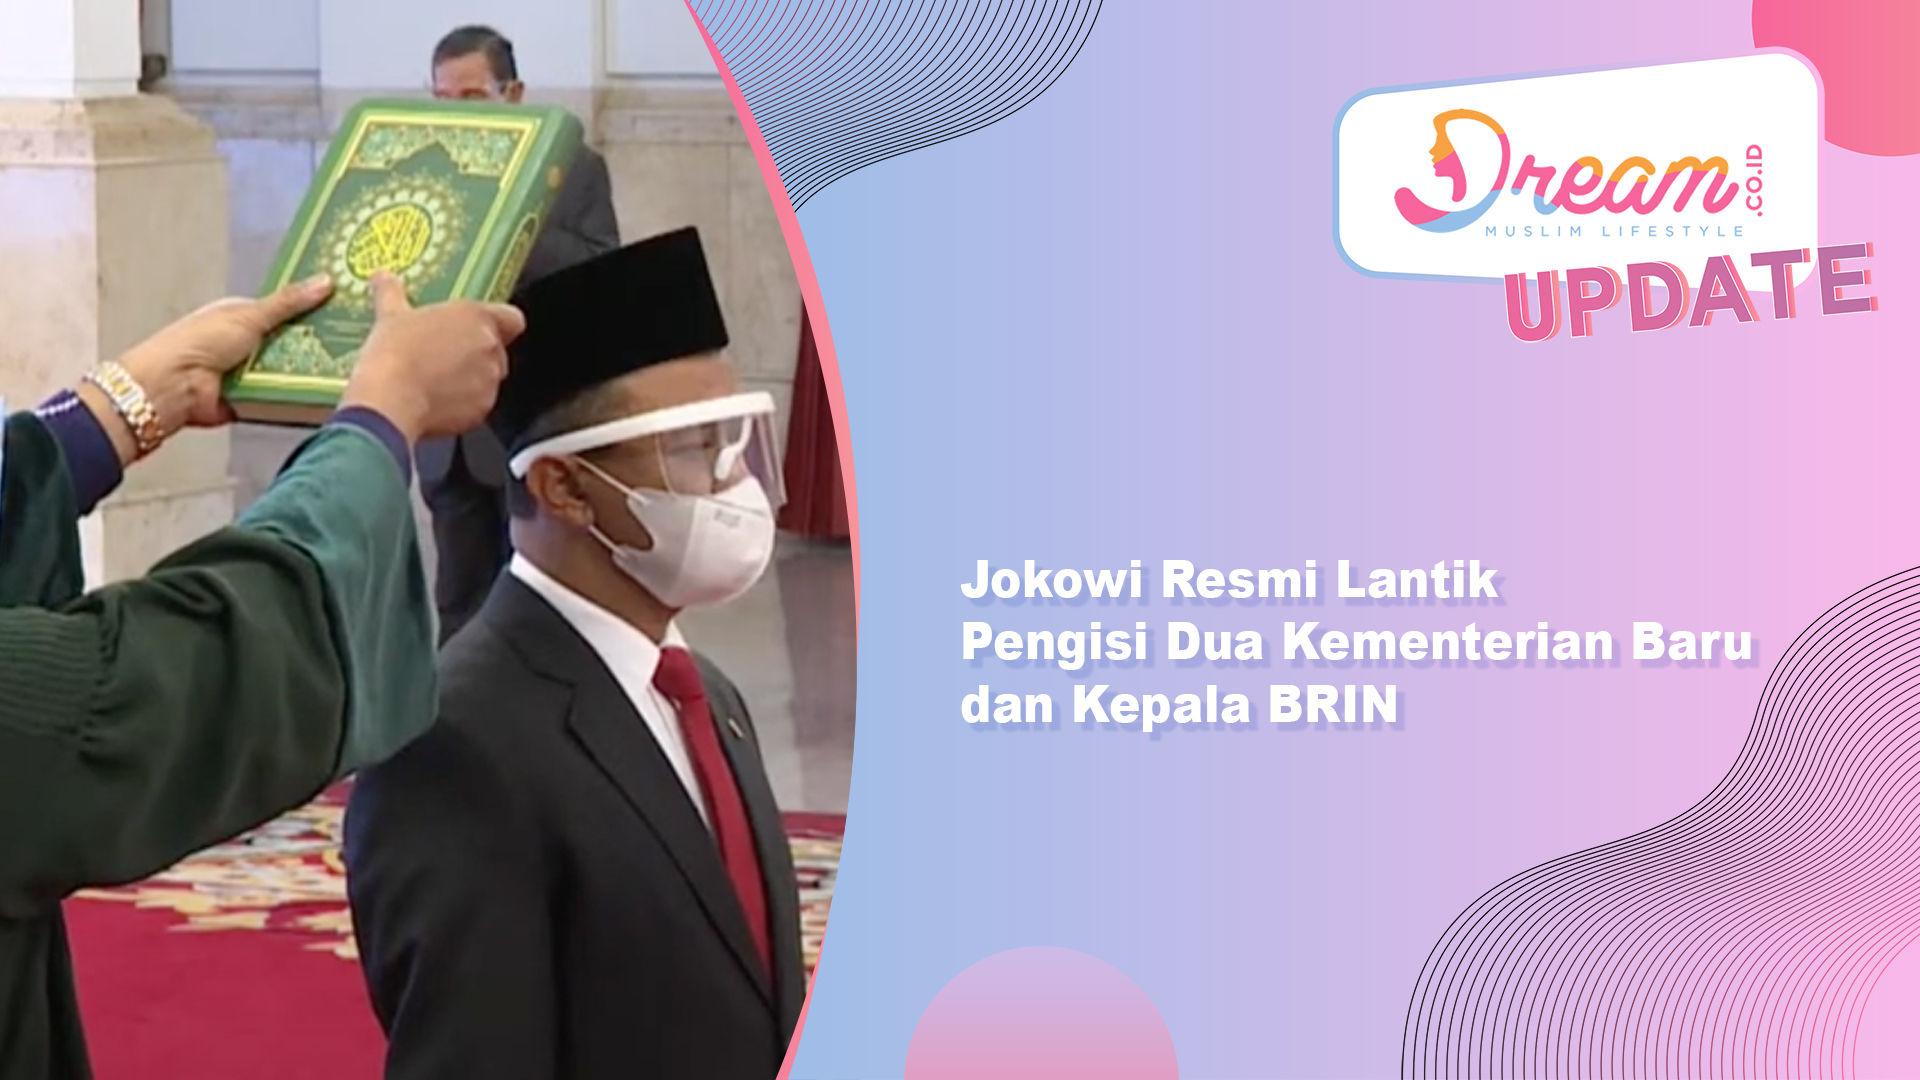 Jokowi Resmi Lantik Pengisi Dua Kementerian Baru